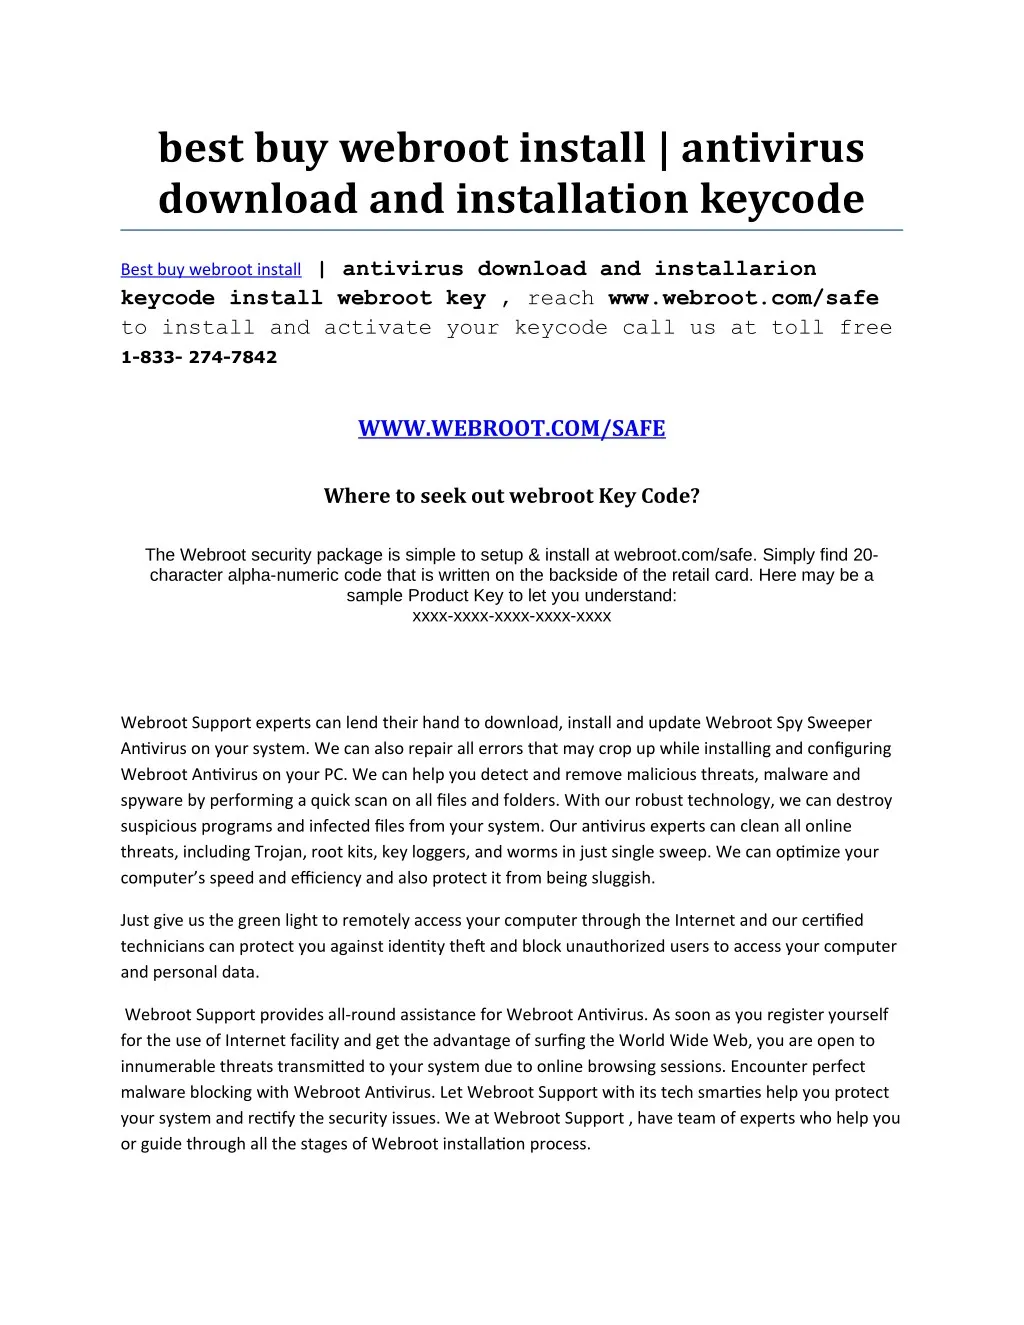 best buy webroot install antivirus download